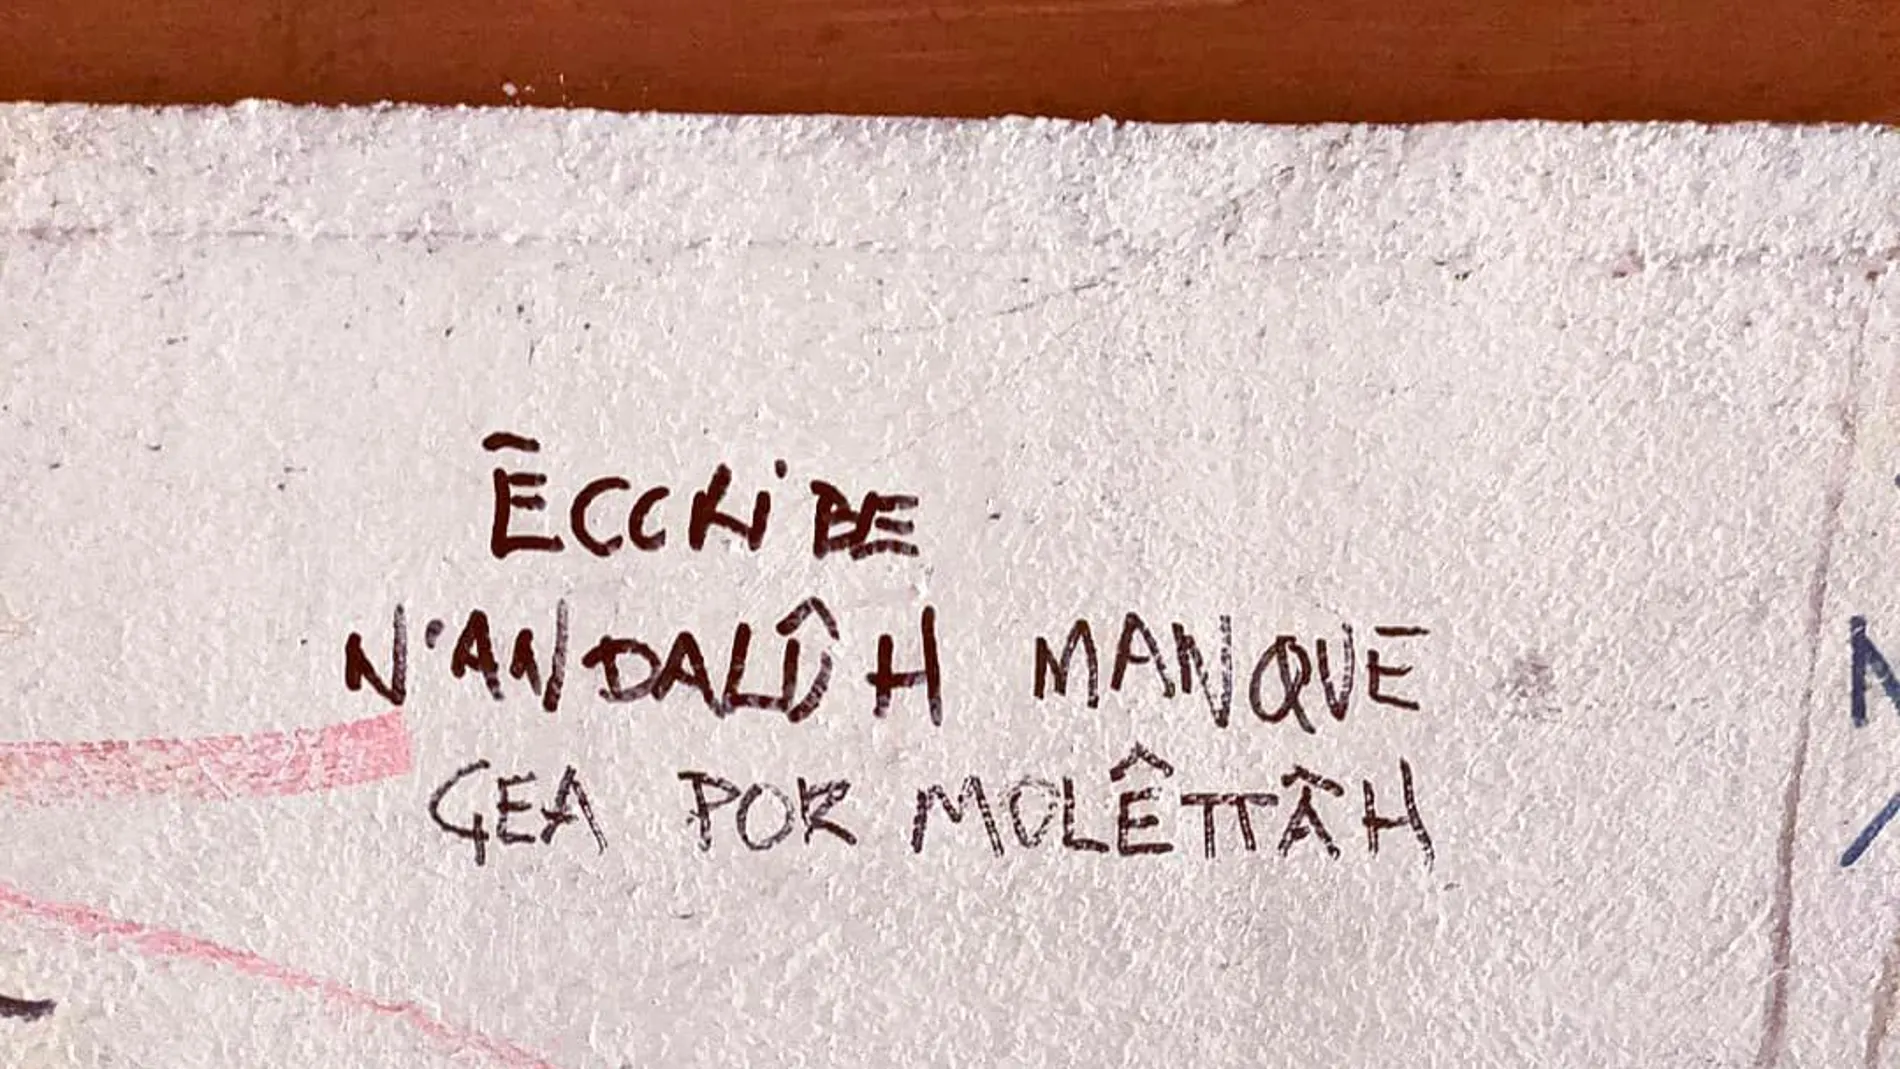 Pintada escrita en "andalûh"